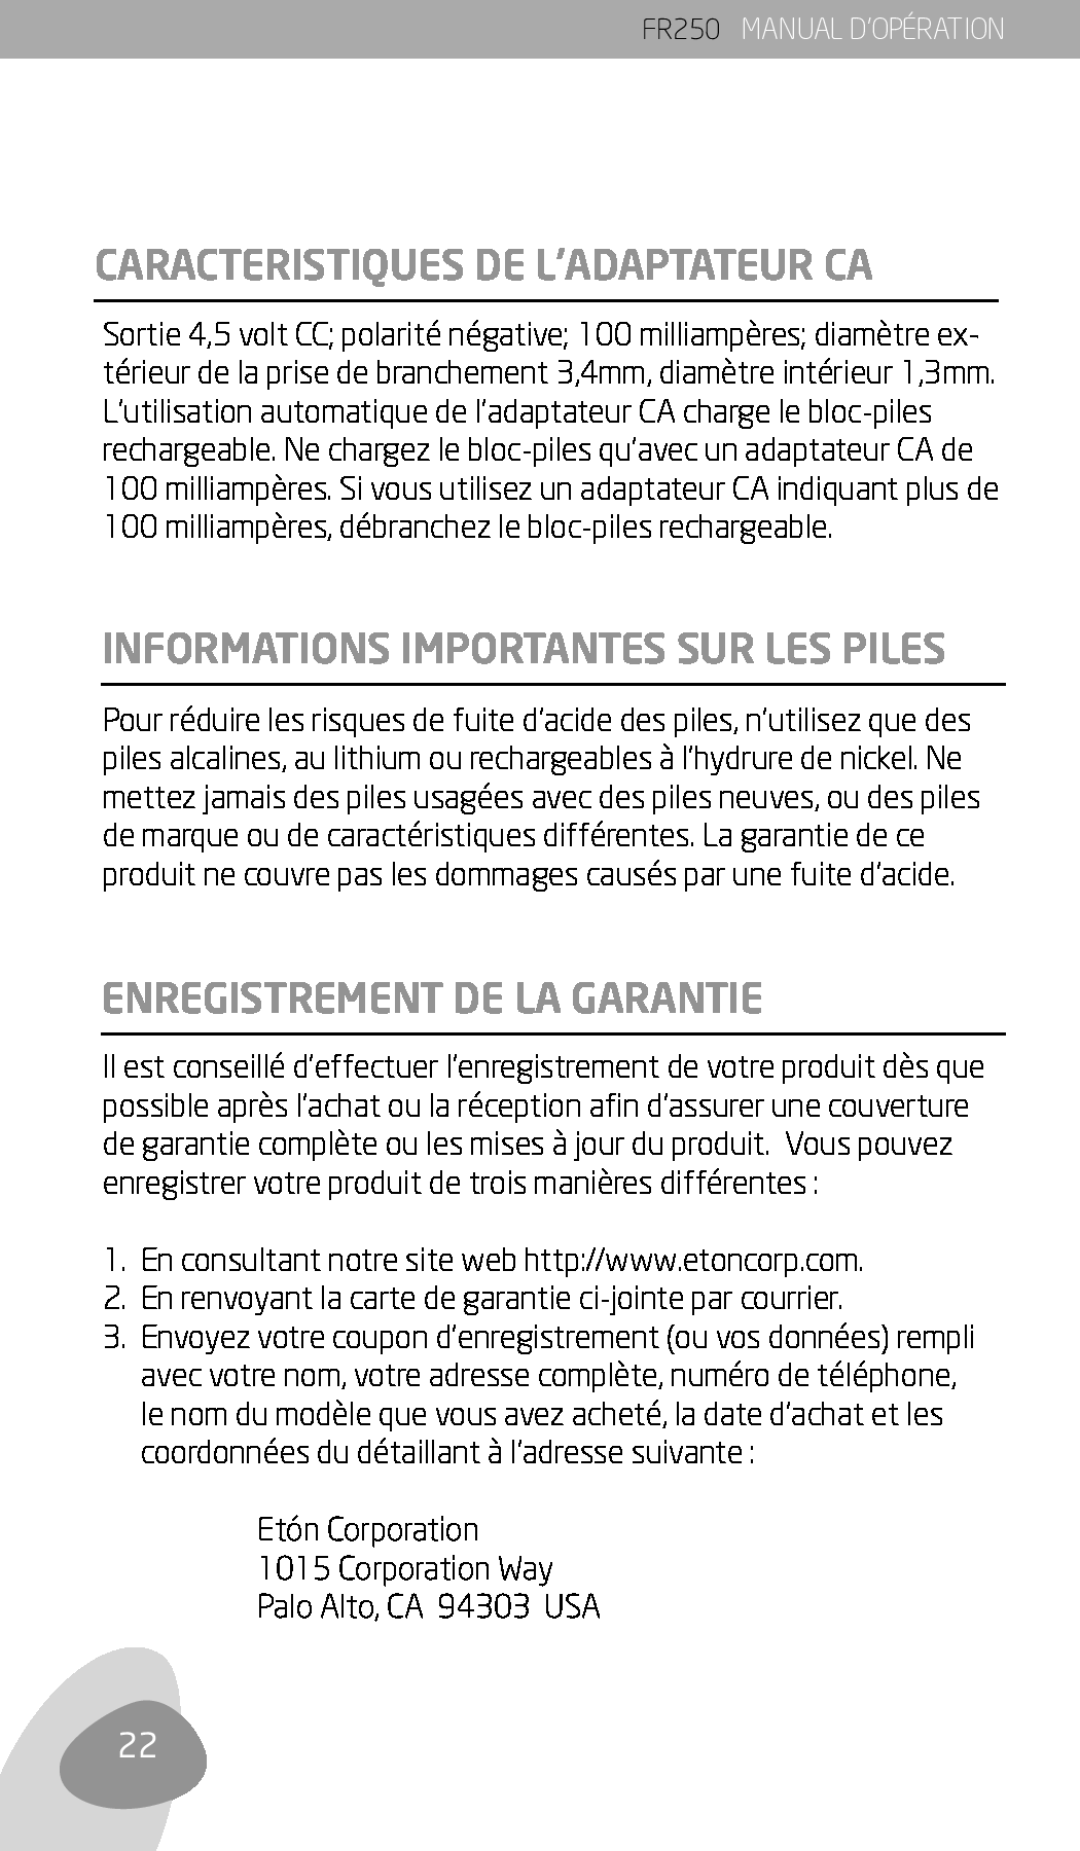 Eton FR250 Caracteristiques De L’Adaptateur Ca, Informations Importantes Sur Les Piles, Enregistrement De La Garantie 